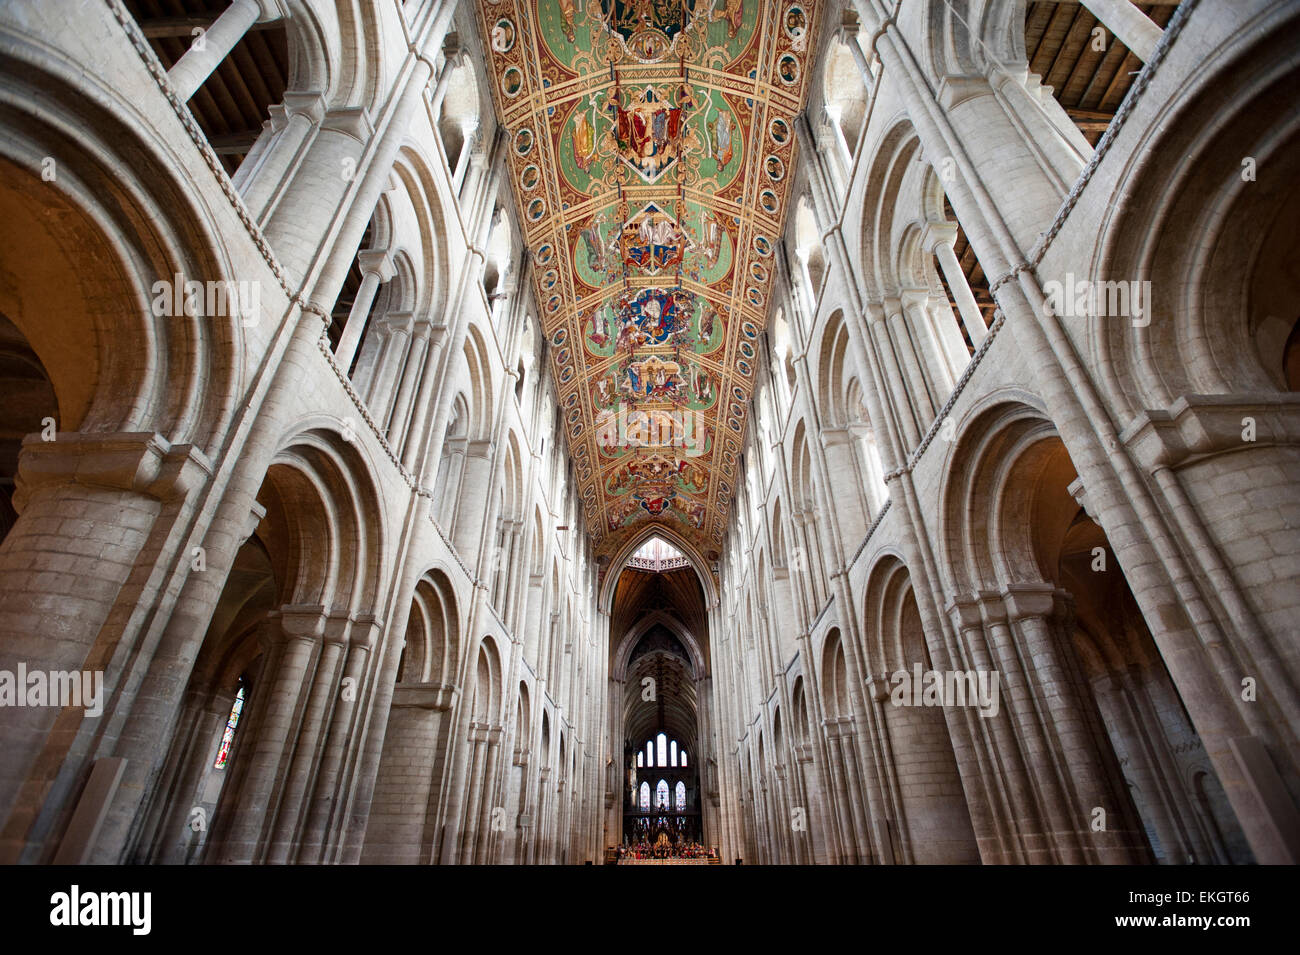 La nave central de la catedral de Ely, Cambridgeshire, construido por los normandos en 1090. La nave es 2248ft. (76 metros) de largo. Foto de stock